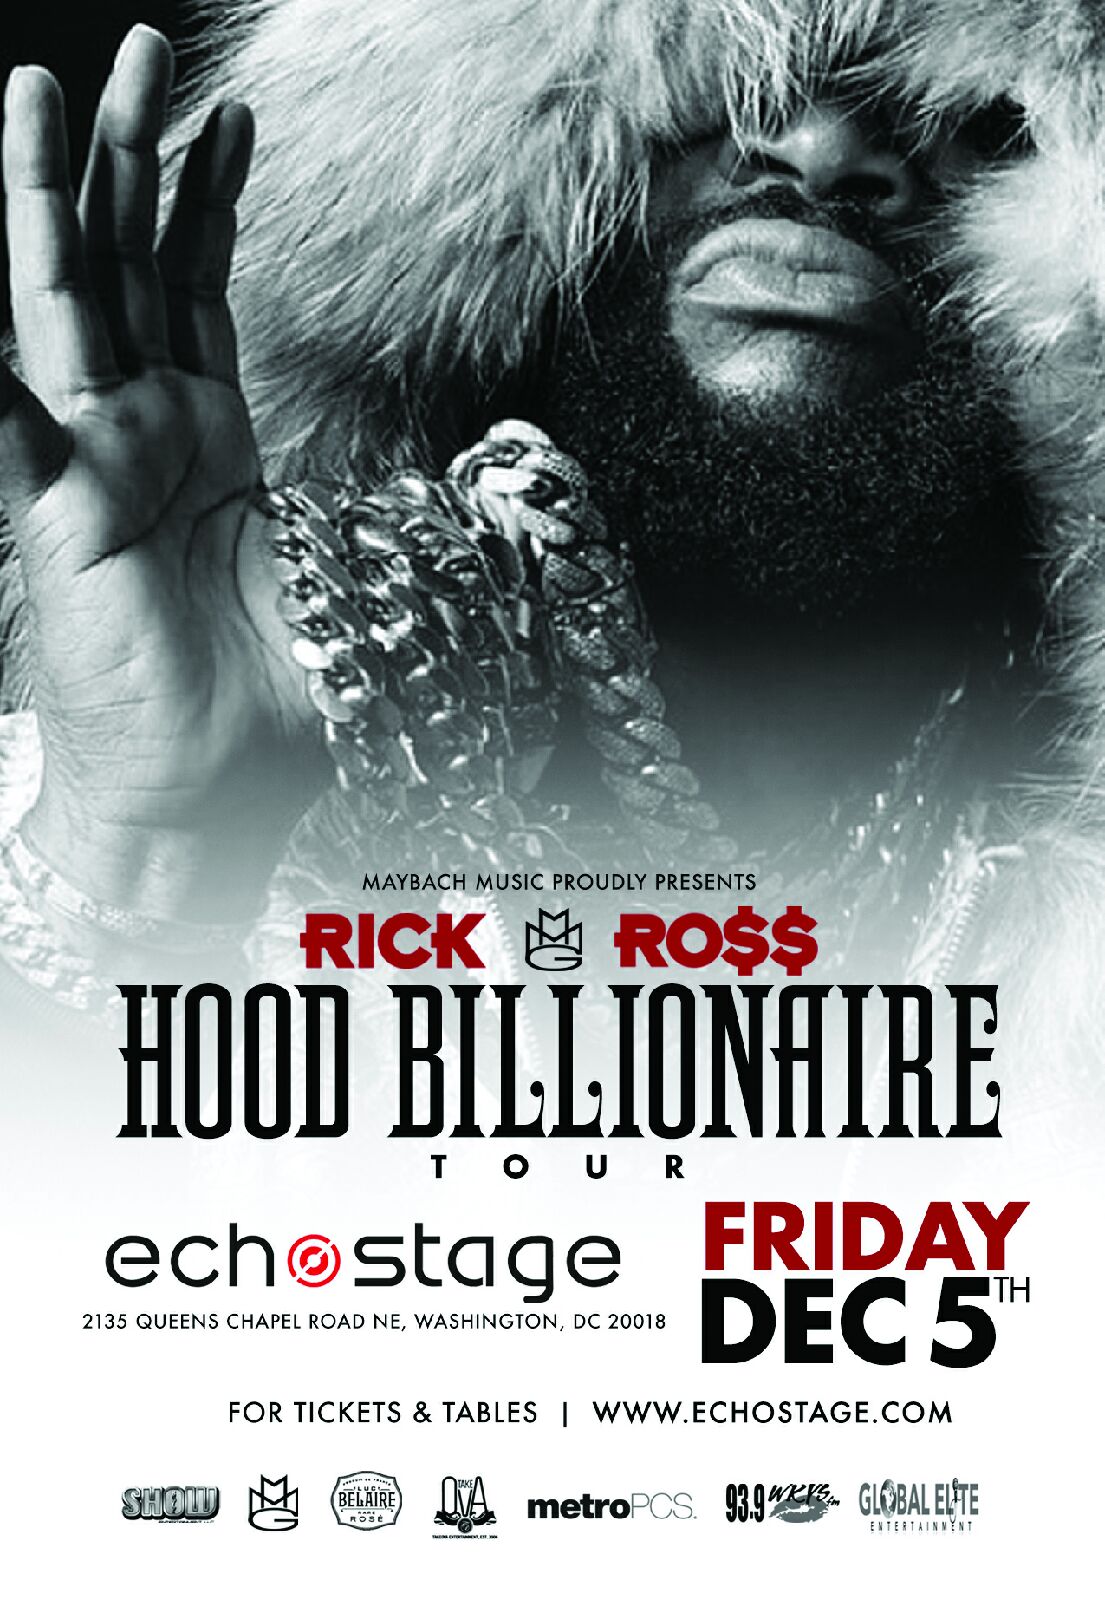 Hood Billionaire Tour